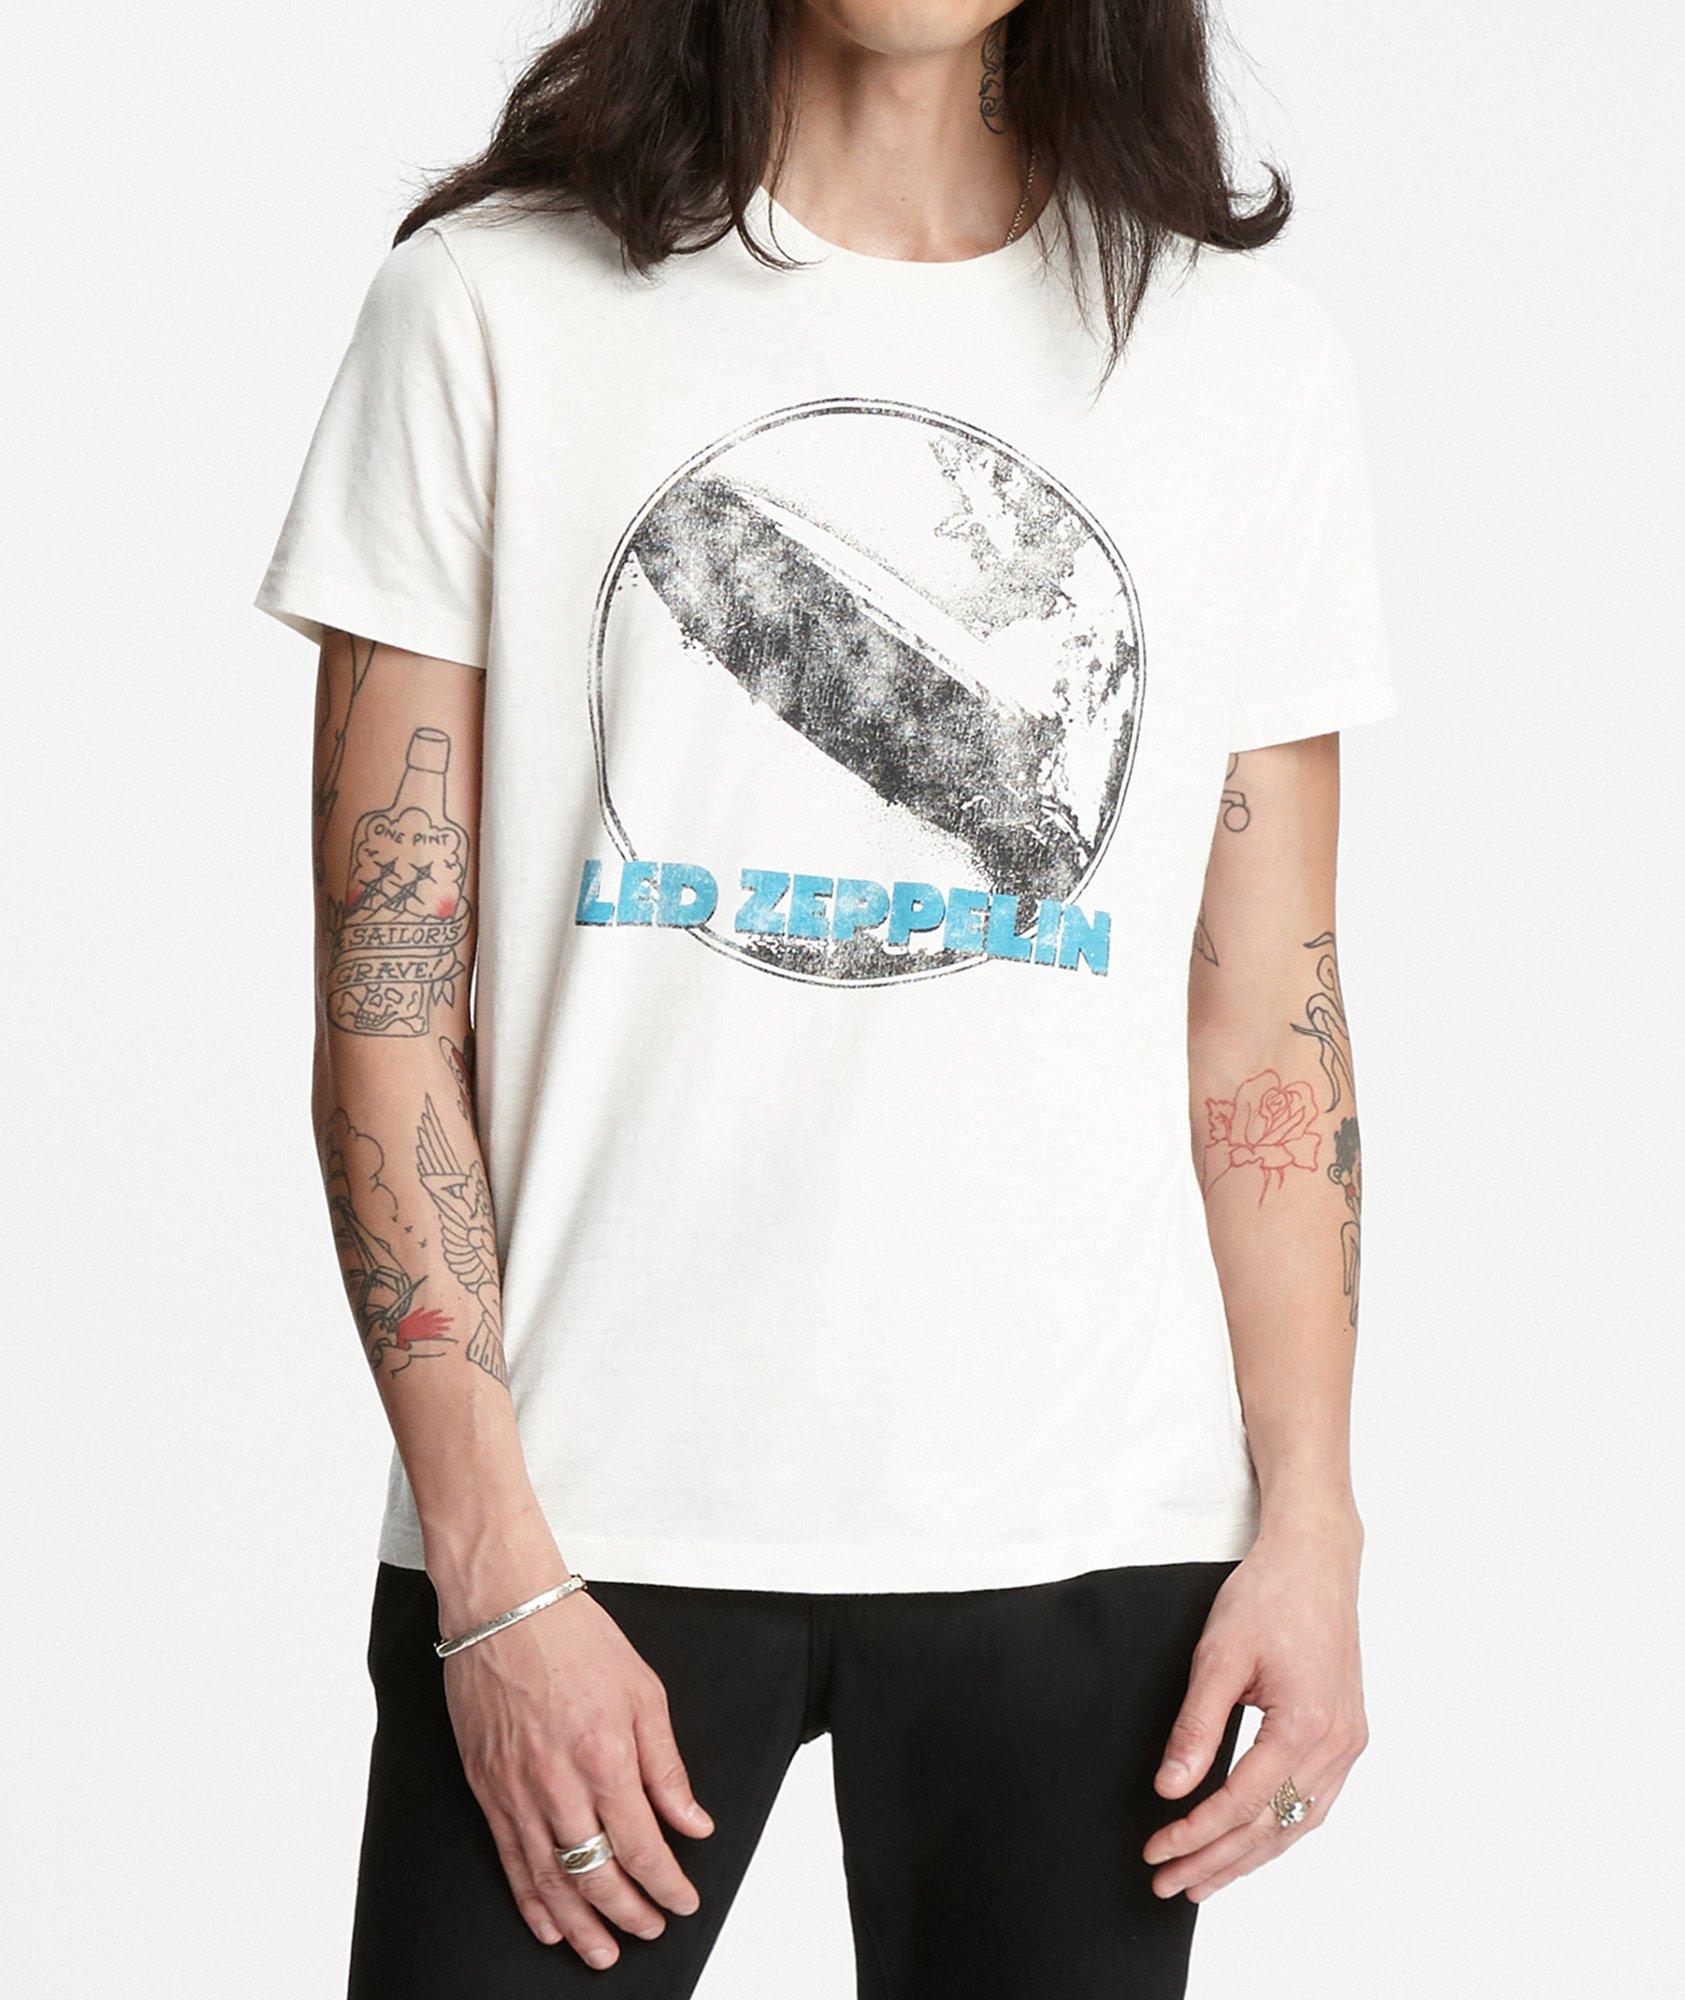 T-shirt de Led Zeppelin image 0